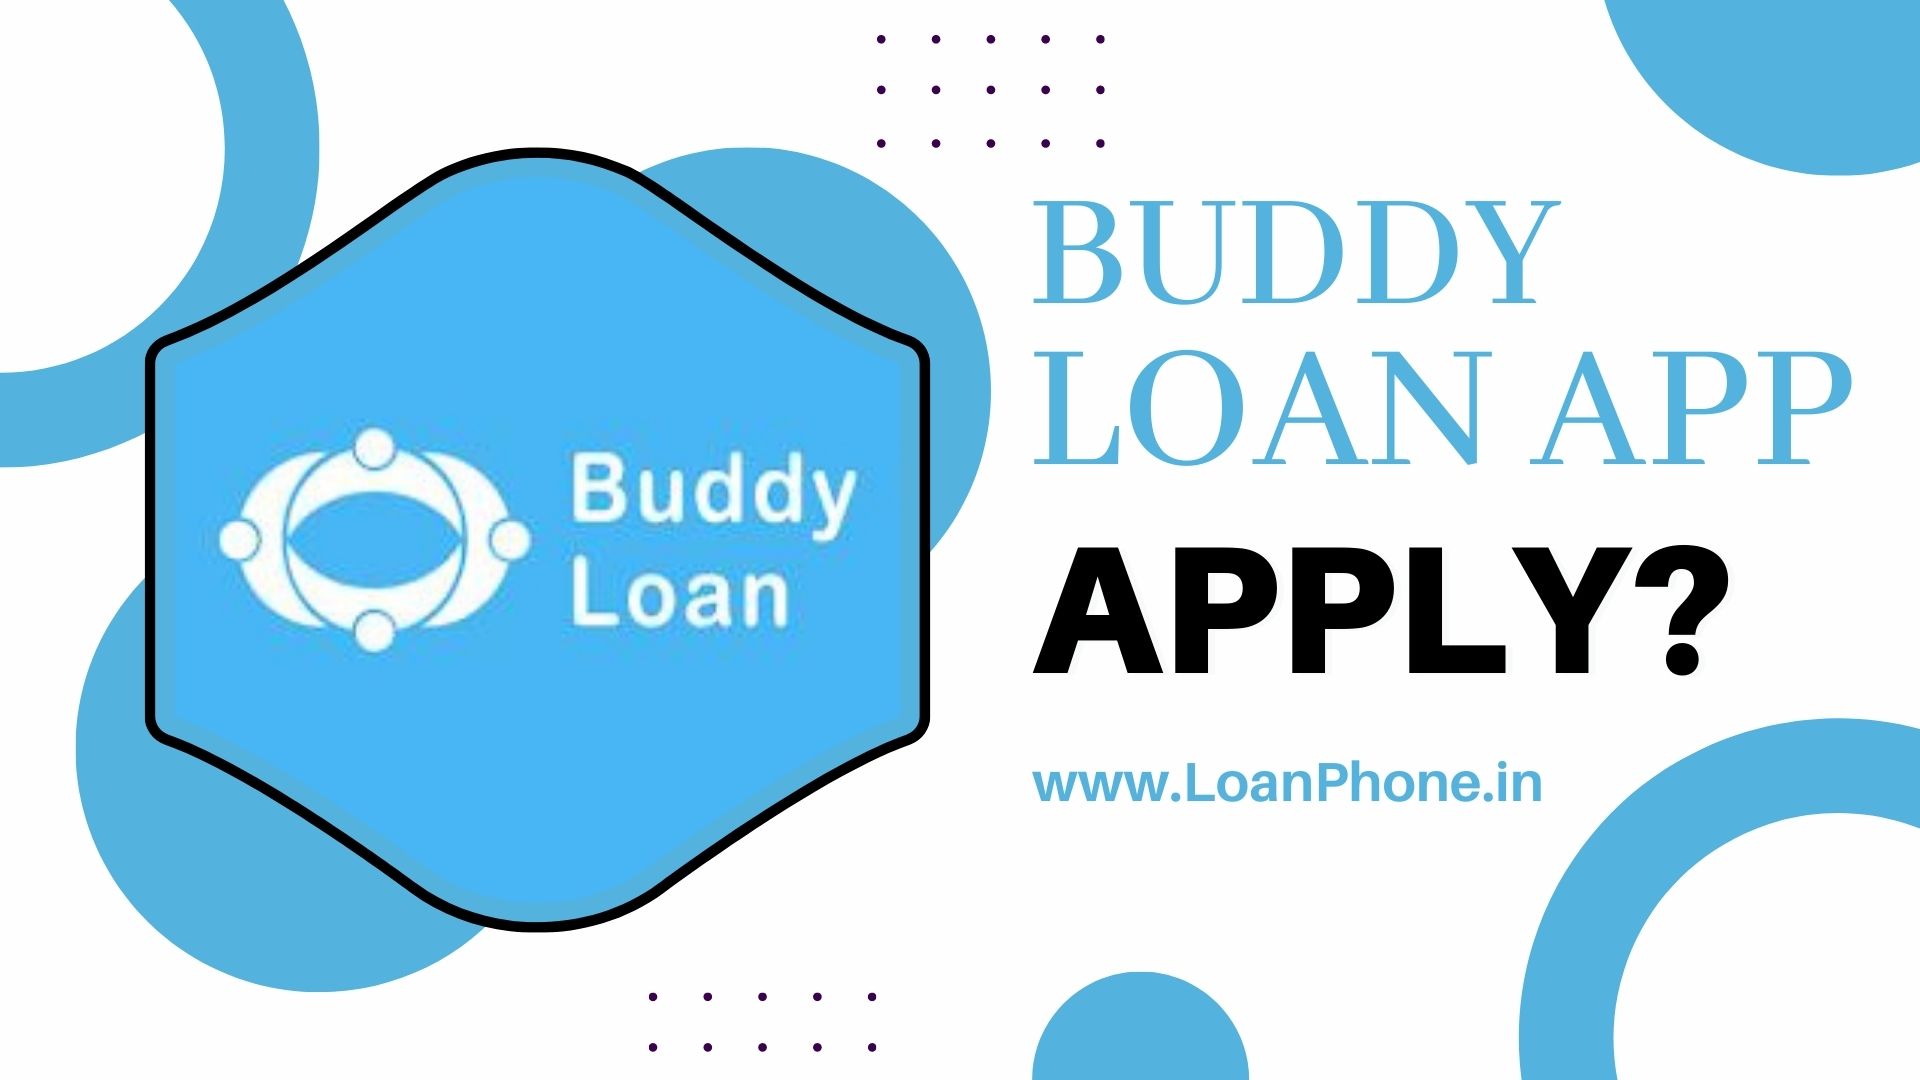 Buddy Loan App से लोन कैसे लें?